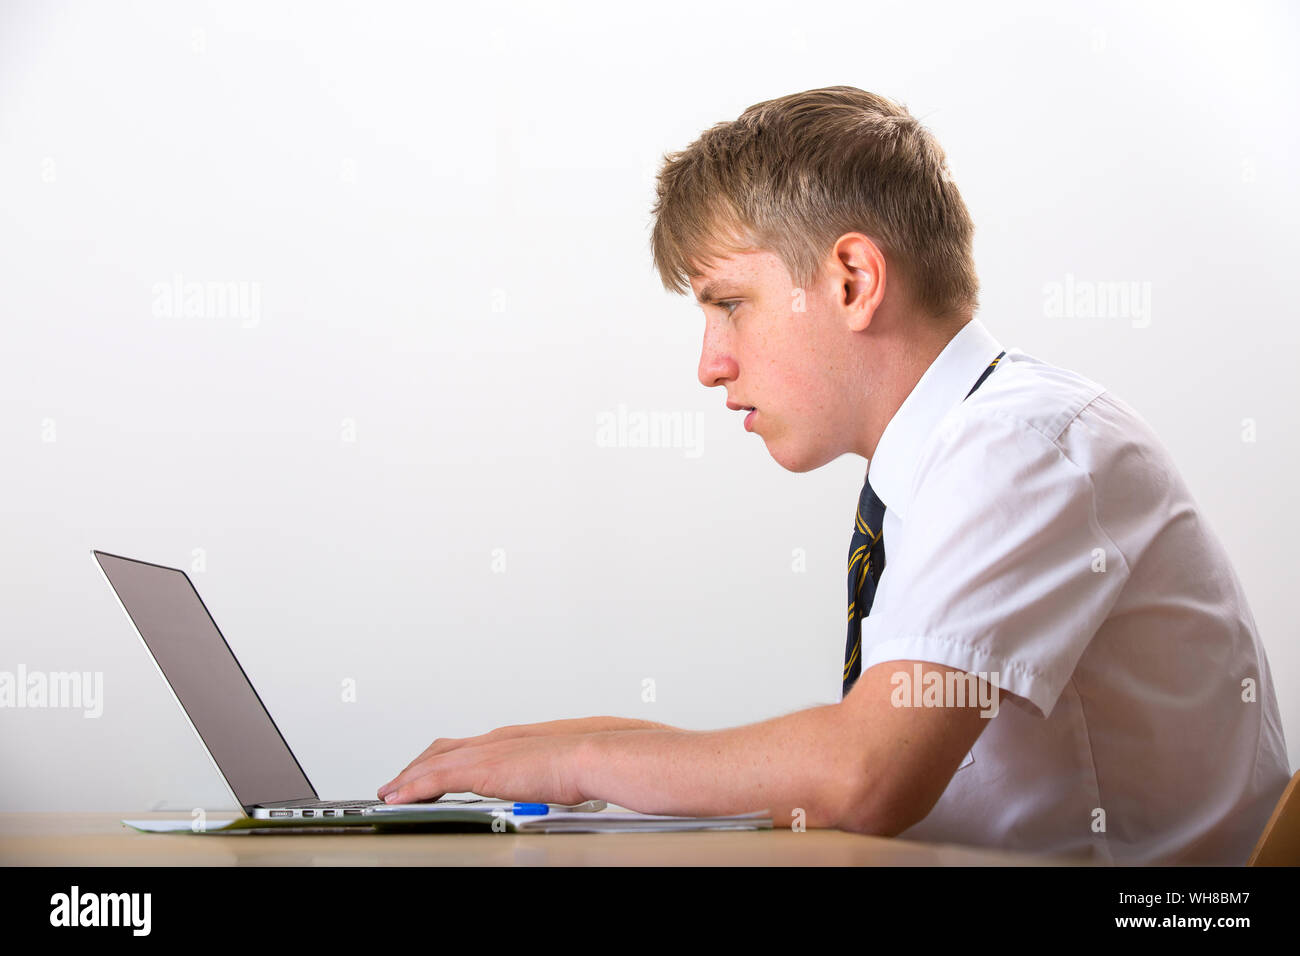 Un jeune garçon en uniforme travaillant sur un ordinateur portable Banque D'Images